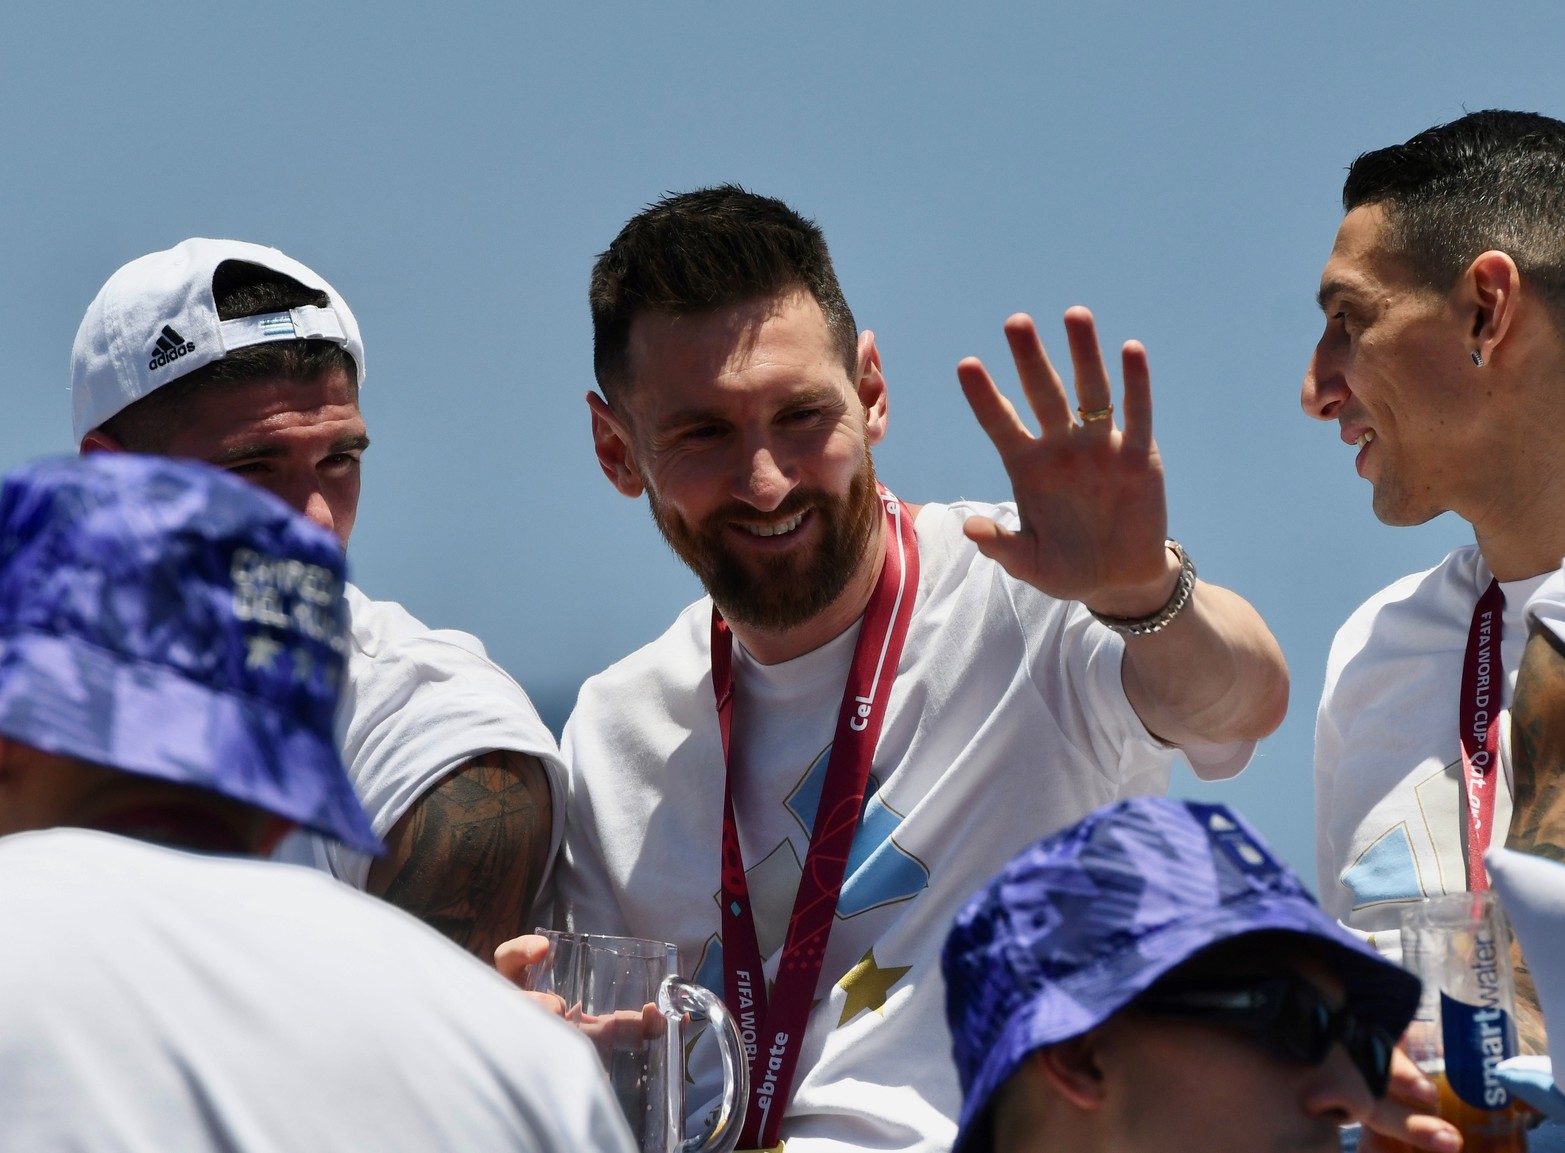 El rey Messi, festeja con sus compañeros. Crédito: Gustavo Amarelle / Télam